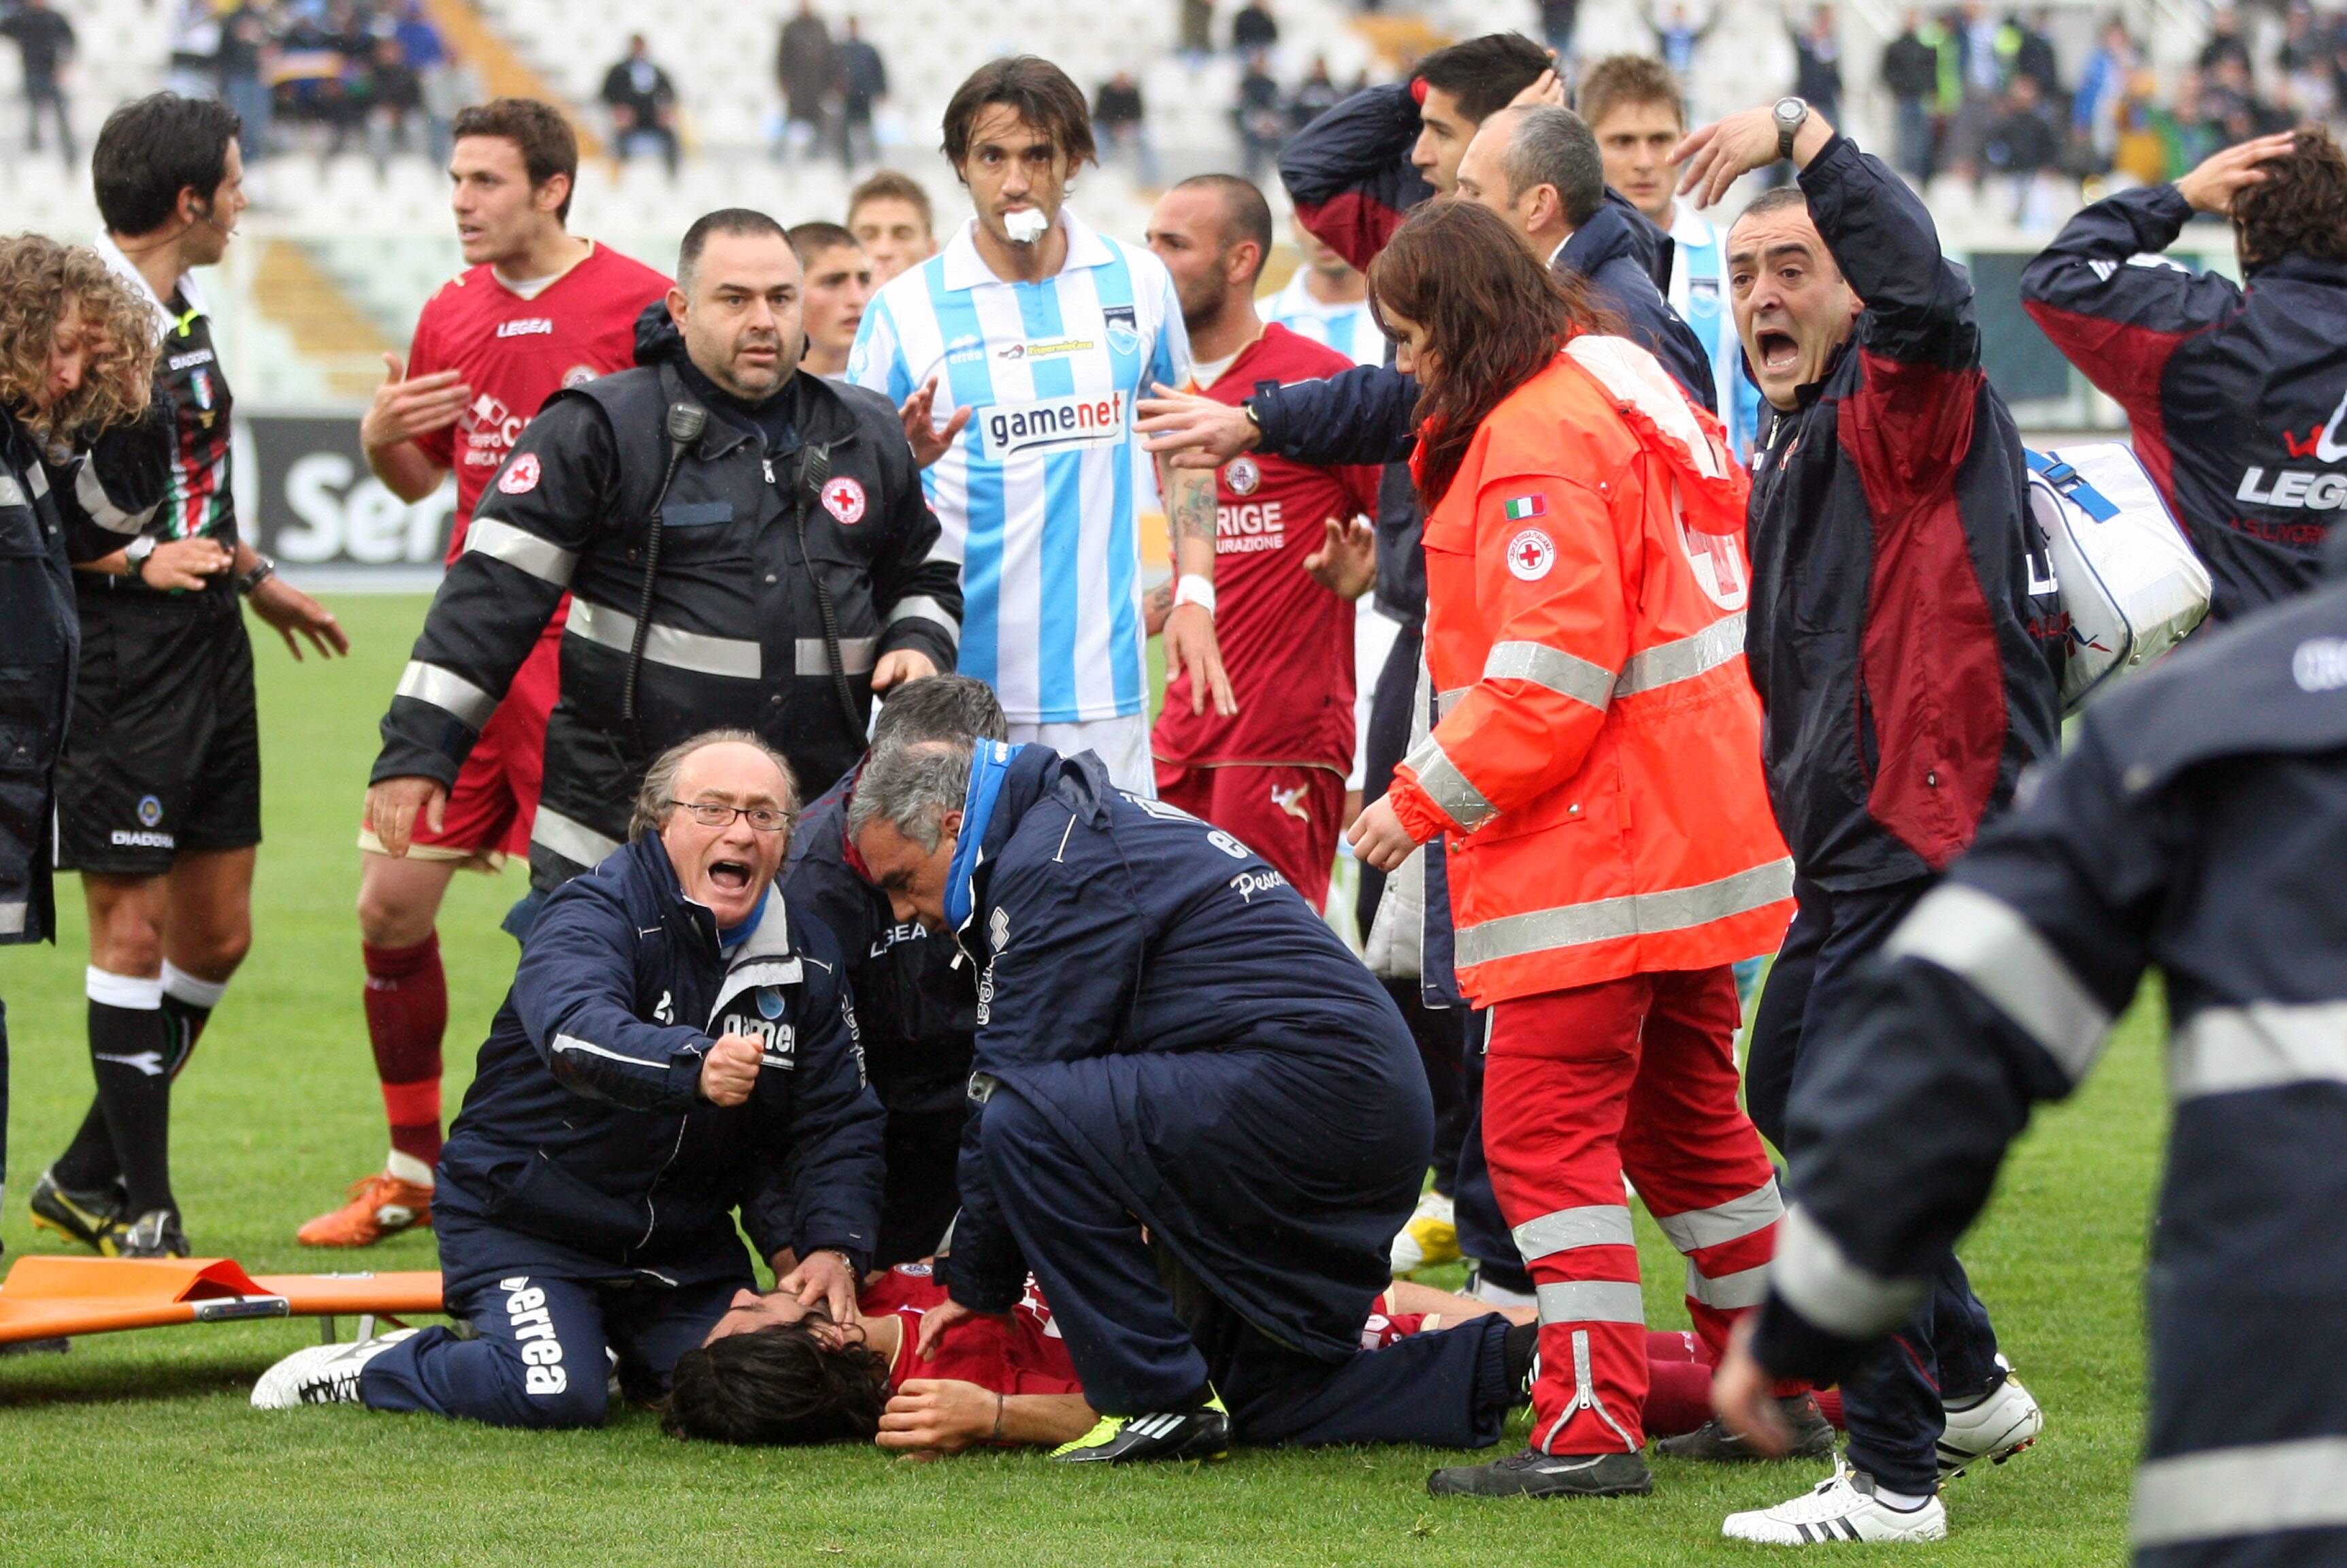 Médicos atendem o jogador Morosini, do Livorno, que morreu por causa de uma parada cardíaca. Foto: AFP